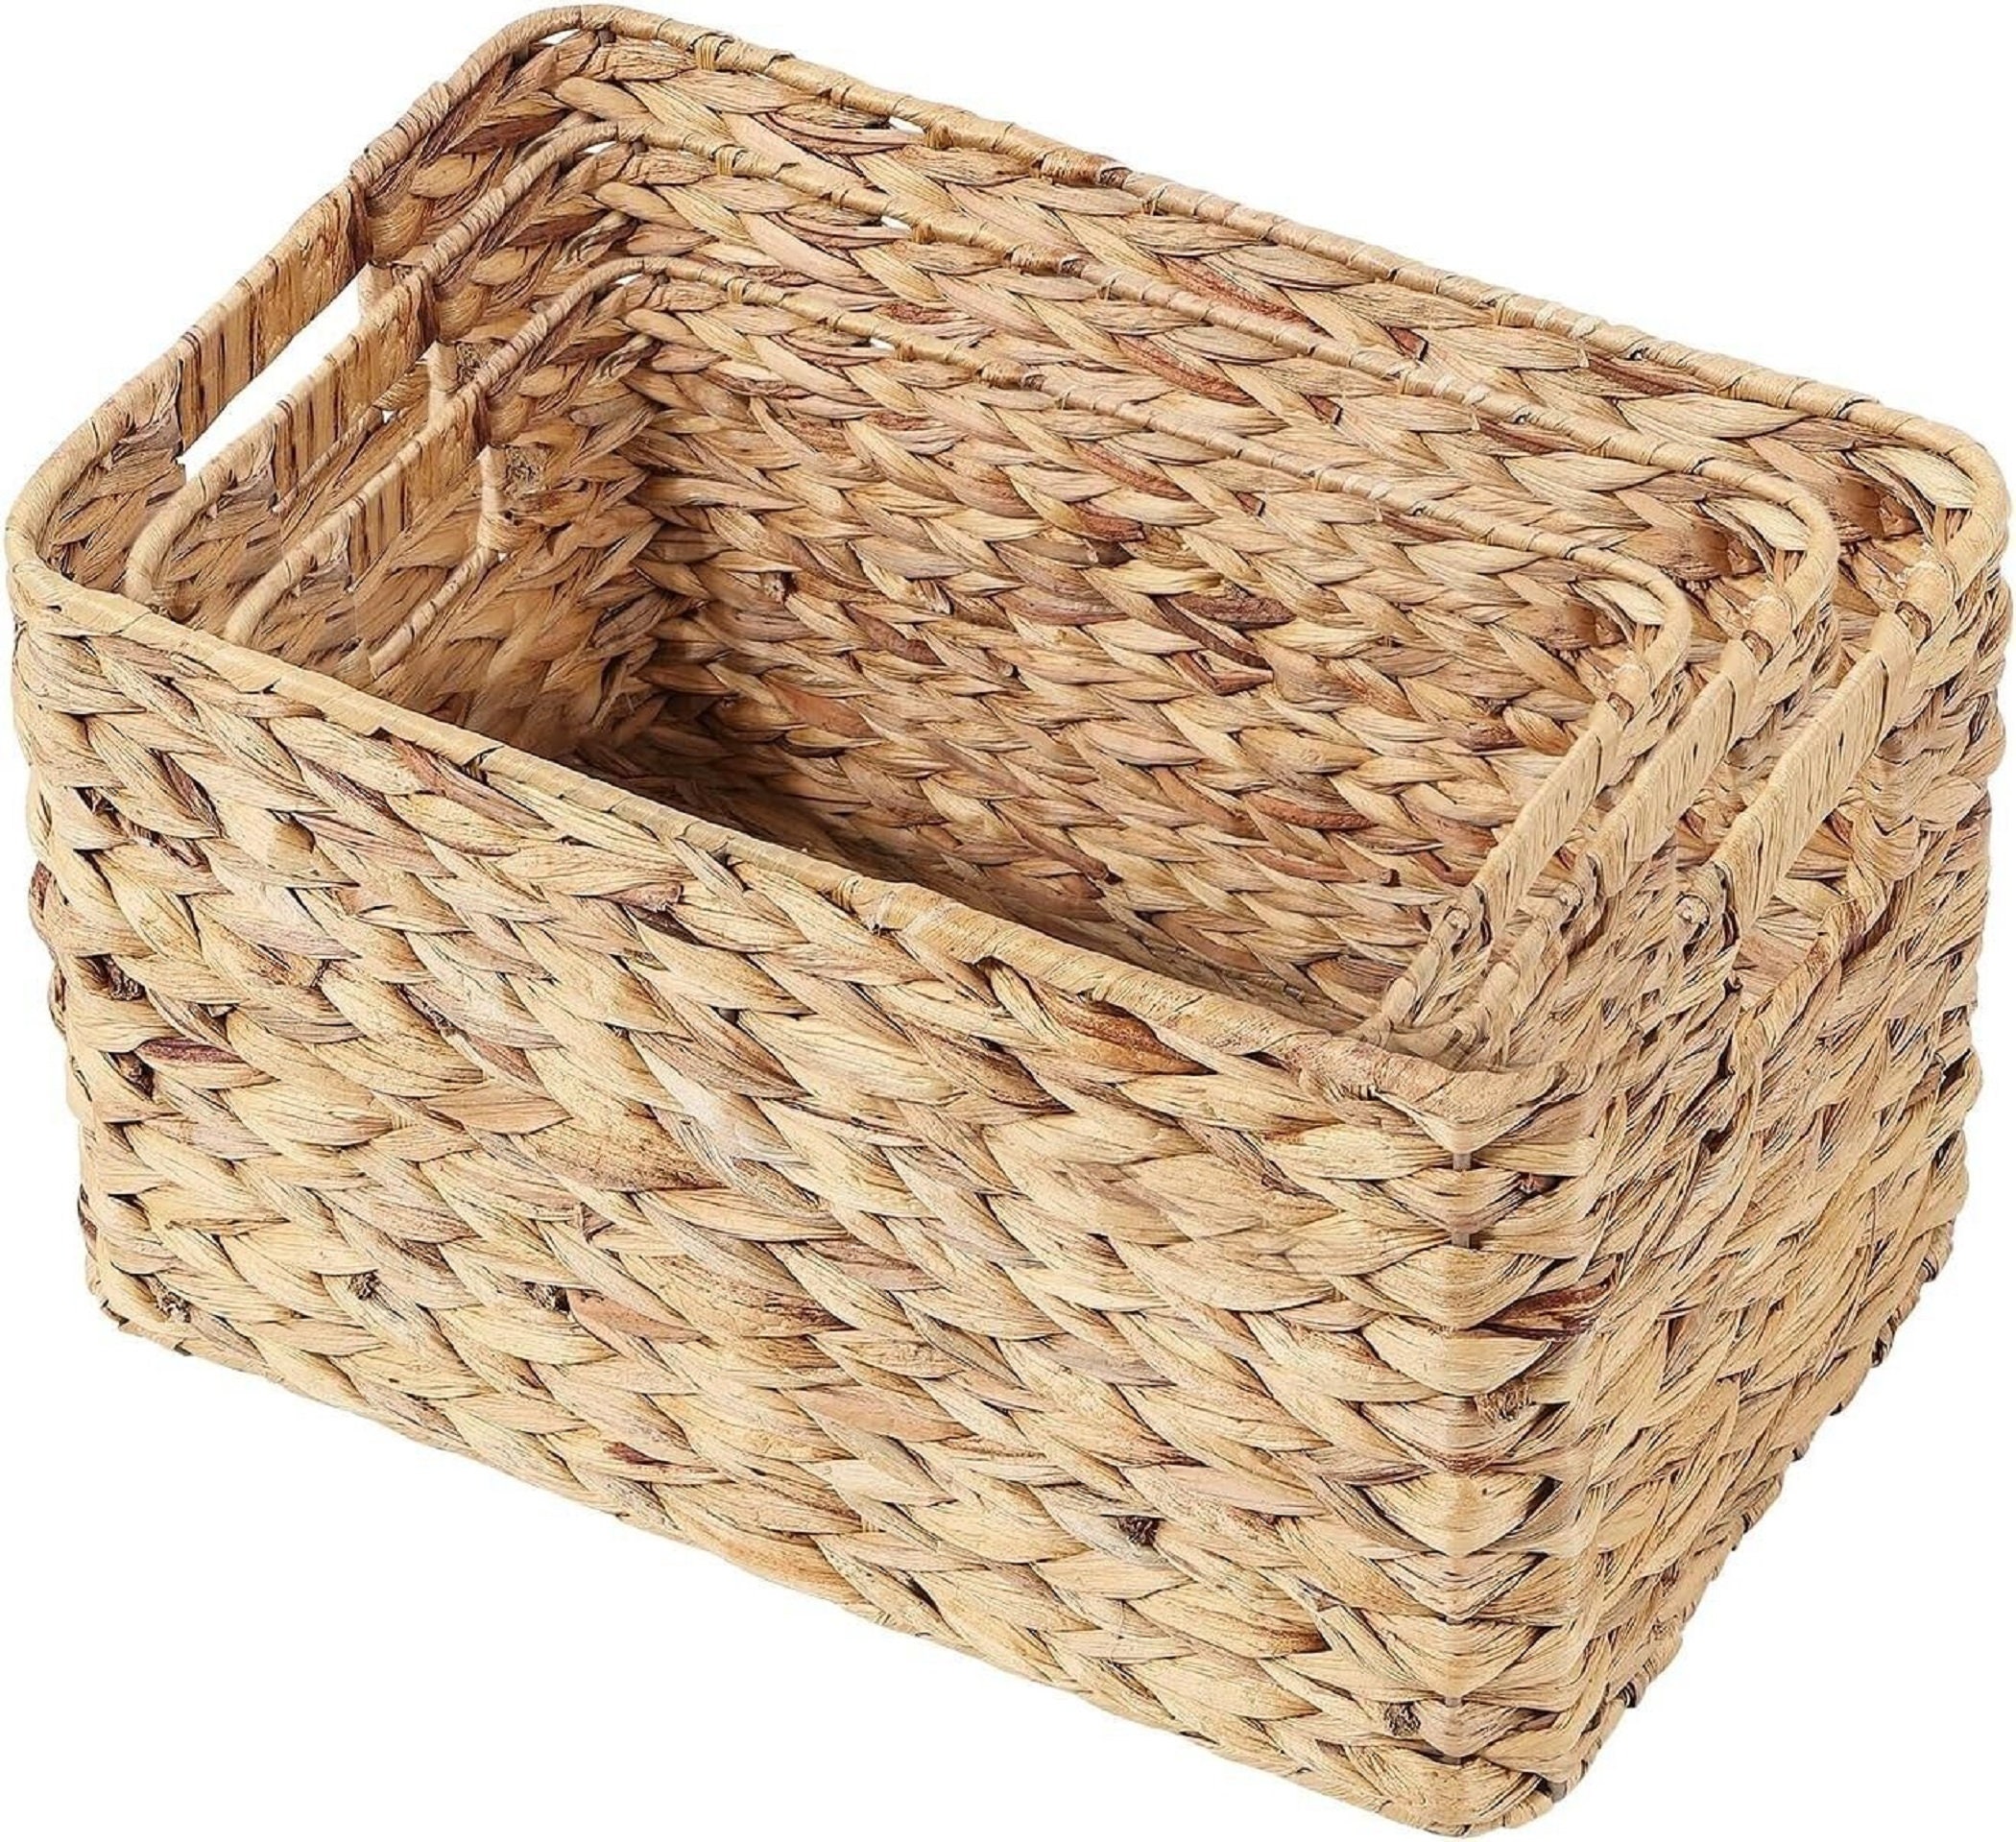 Ikea Billy Shelf Basket 36 X 25 X 20 Cm Made of Water Hyacinth